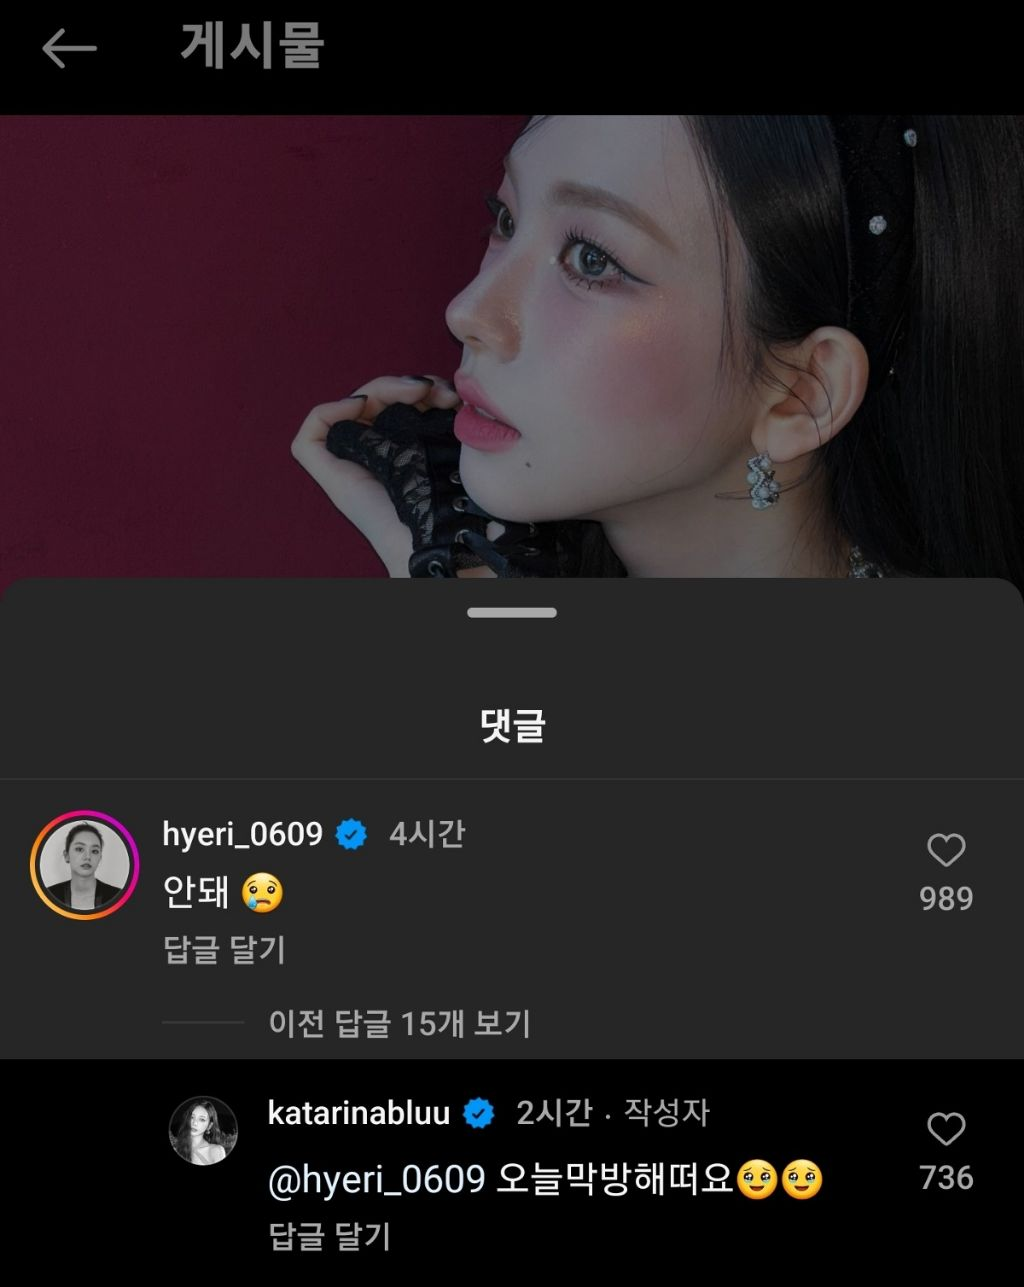 A personalidade 'amigável' de Hyeri no Dia das Meninas desperta tópico de apreciação + Stans discutem a popularidade do Idol na Coreia